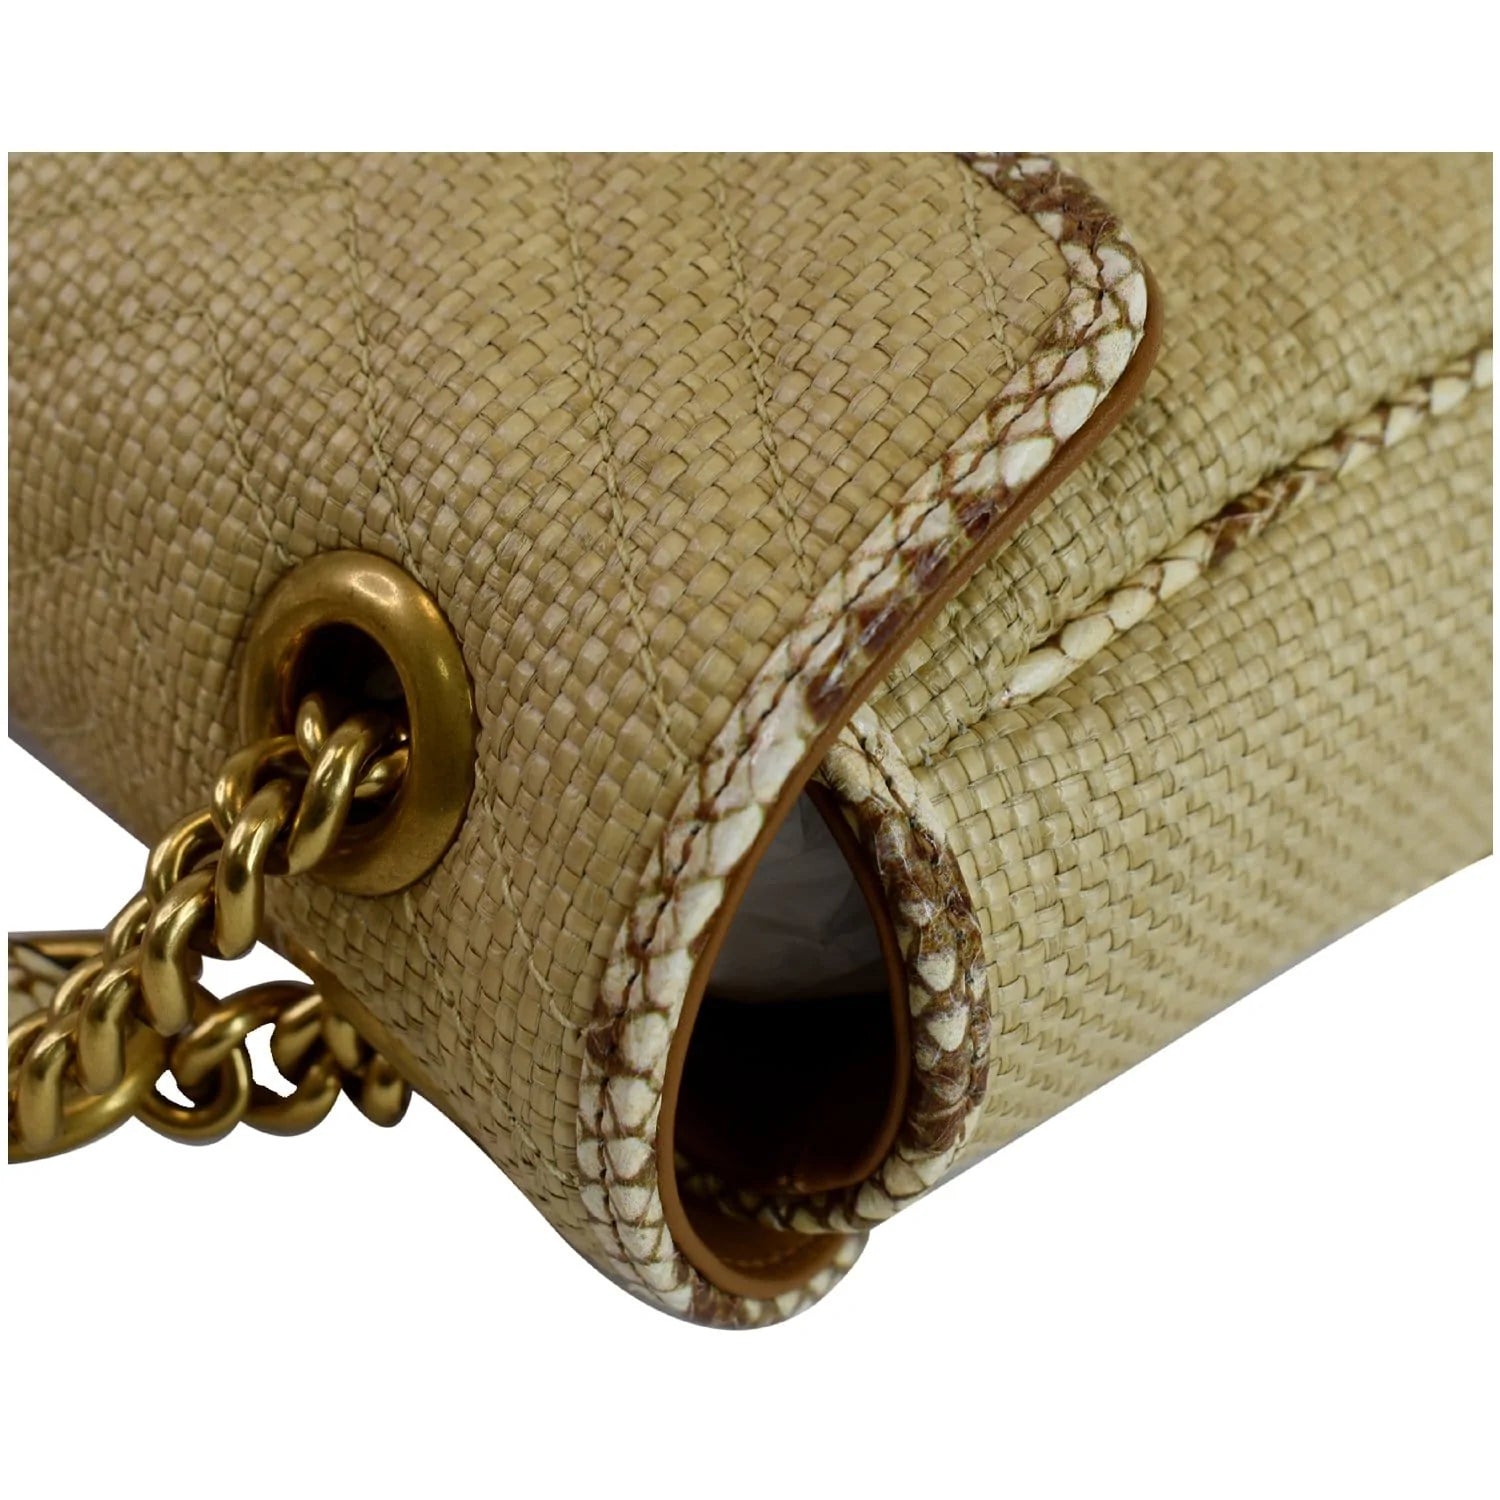 GG Marmont small raffia shoulder bag | Gucci